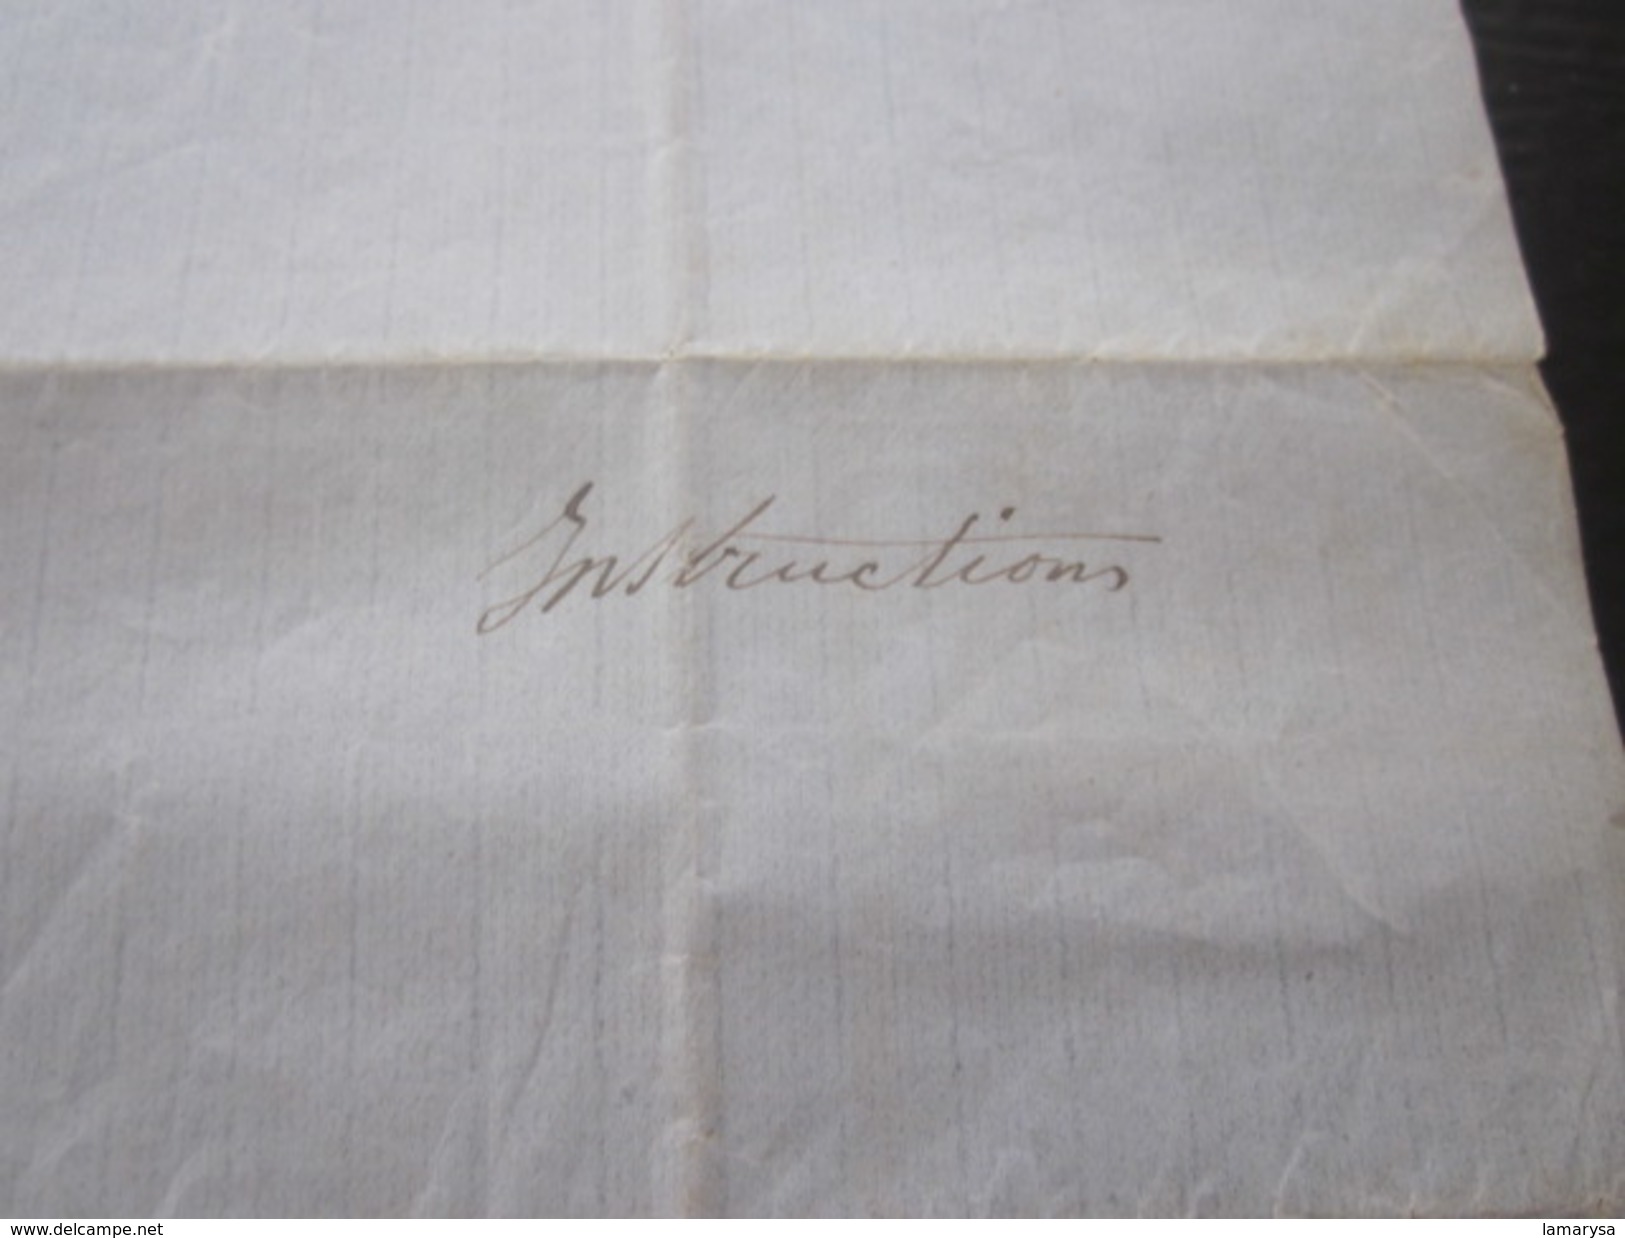 1860 Manuscrit Bill of Lading Connaissement Instructions armement mariti Bateau Vapeur"Pithéas"Lettre à Capitaine Fontan